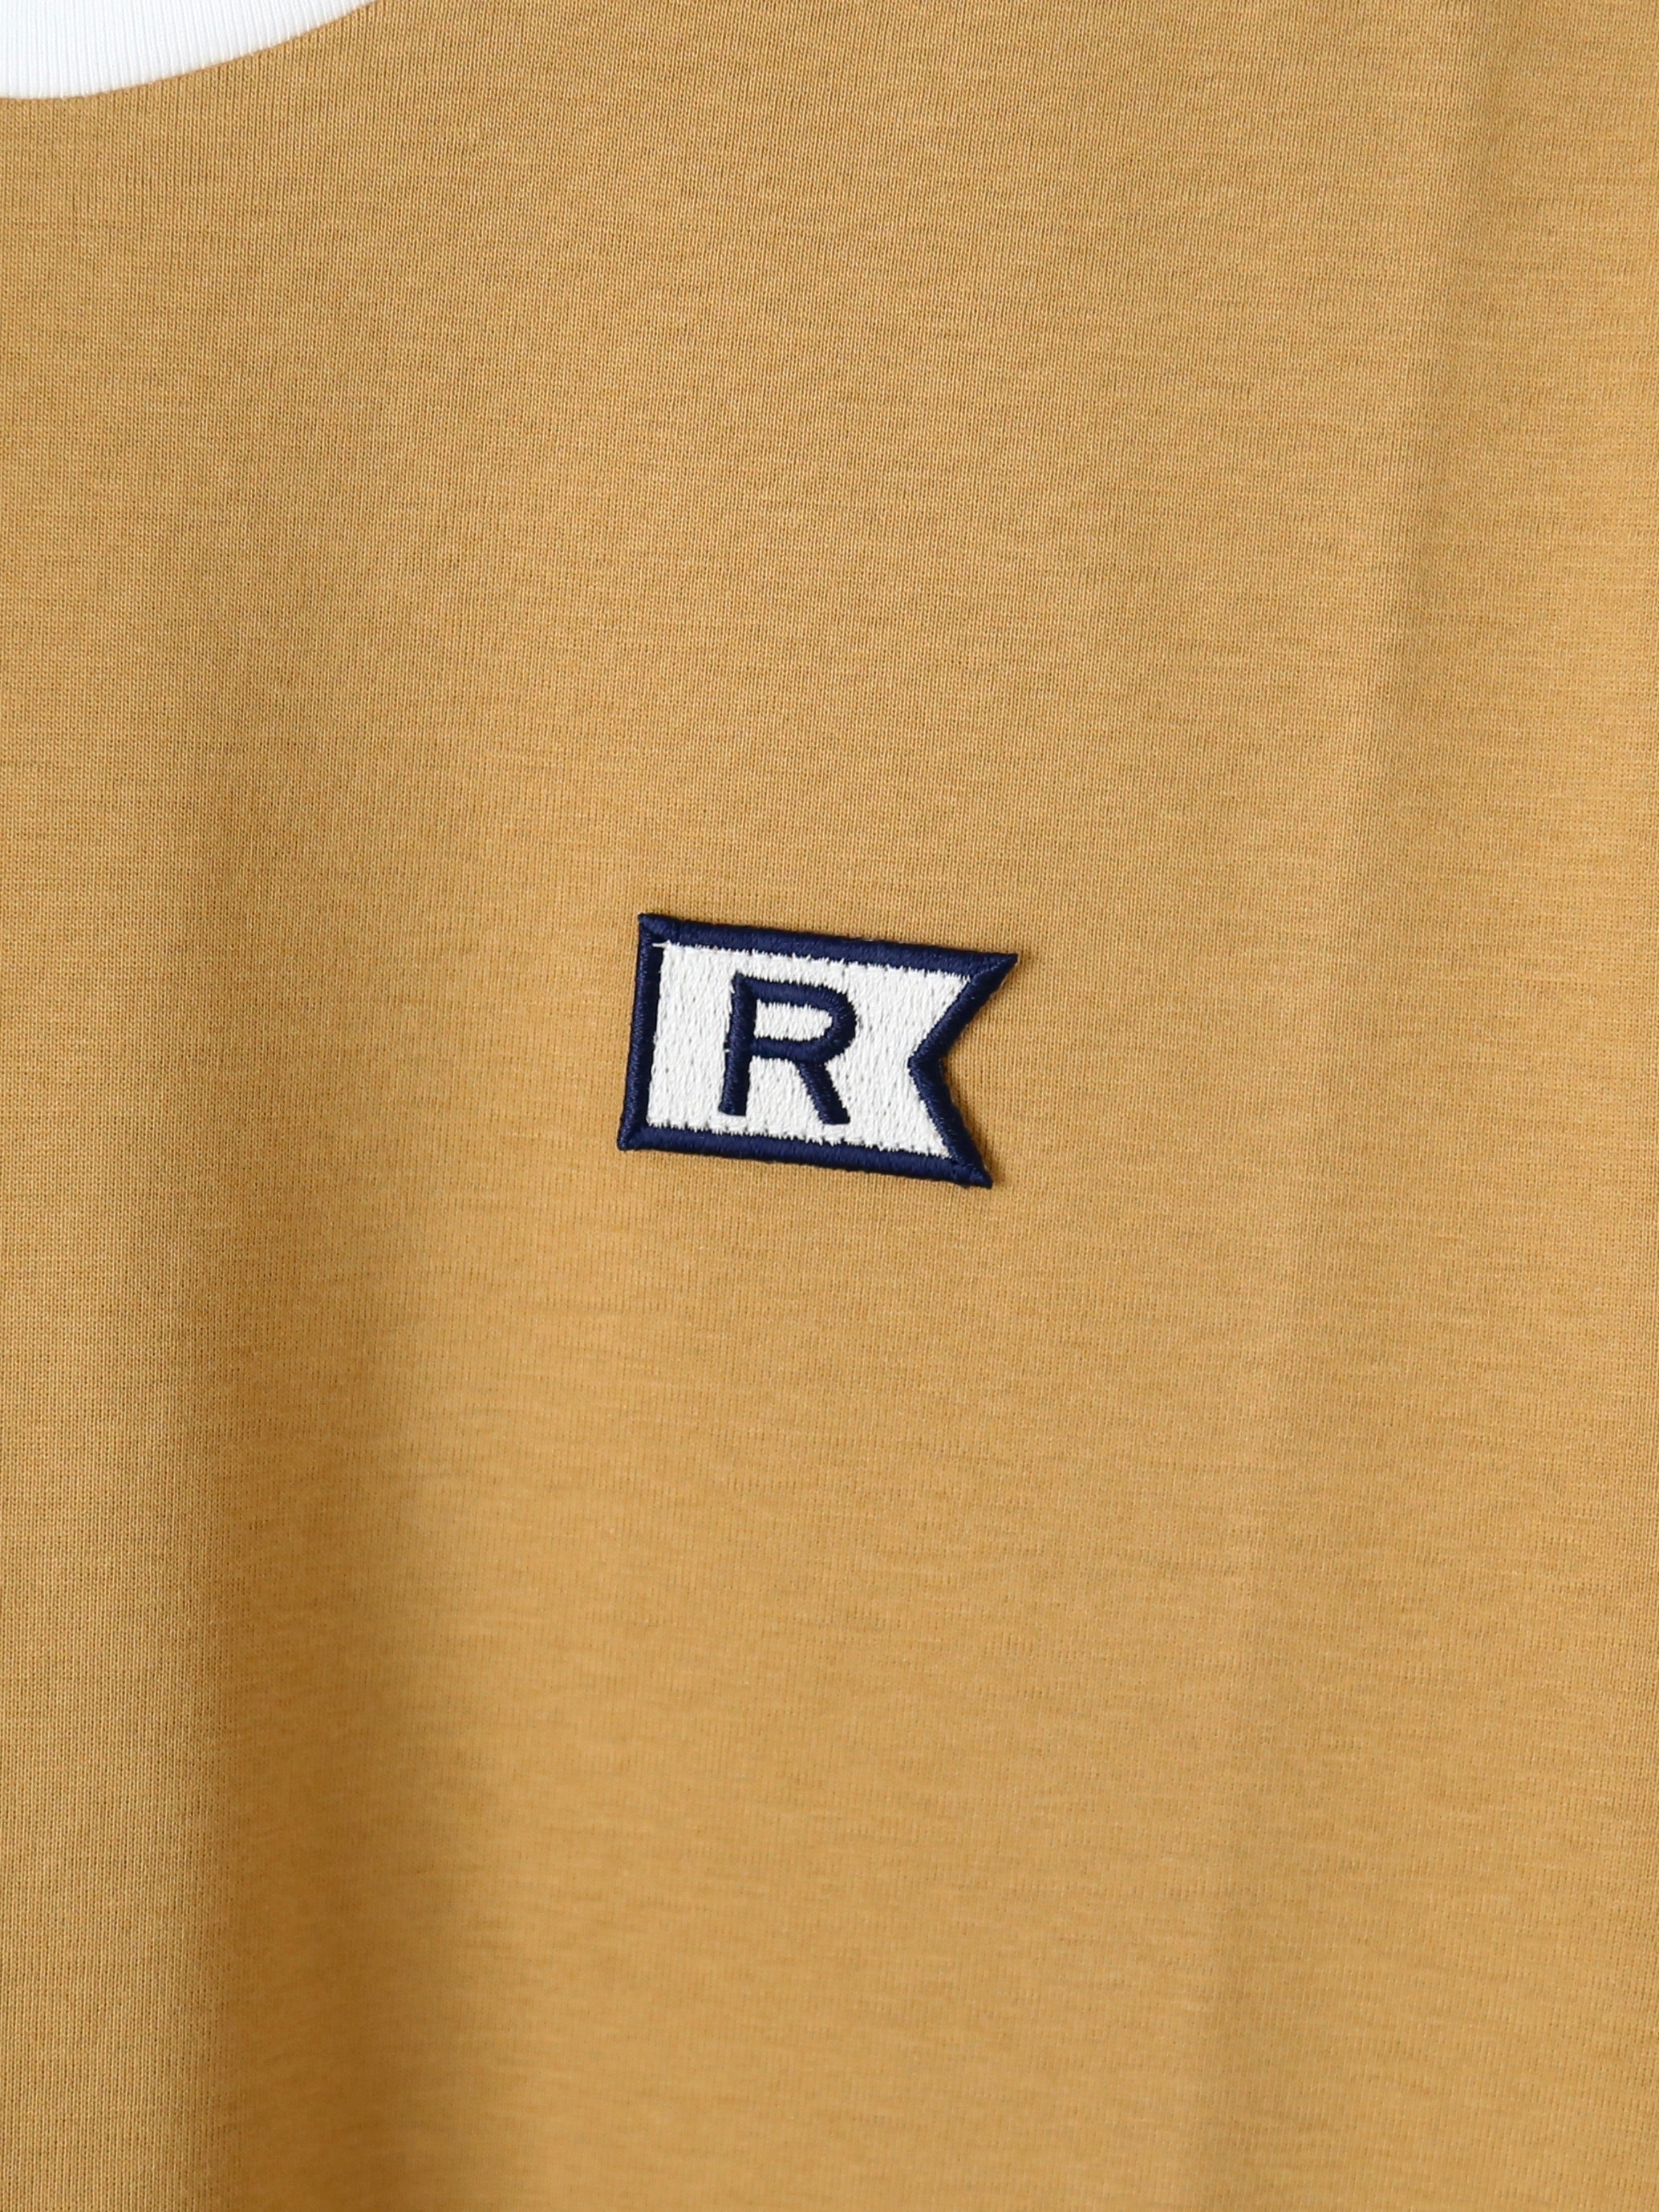 R&D.M.Co- スポーツTシャツ [6344]